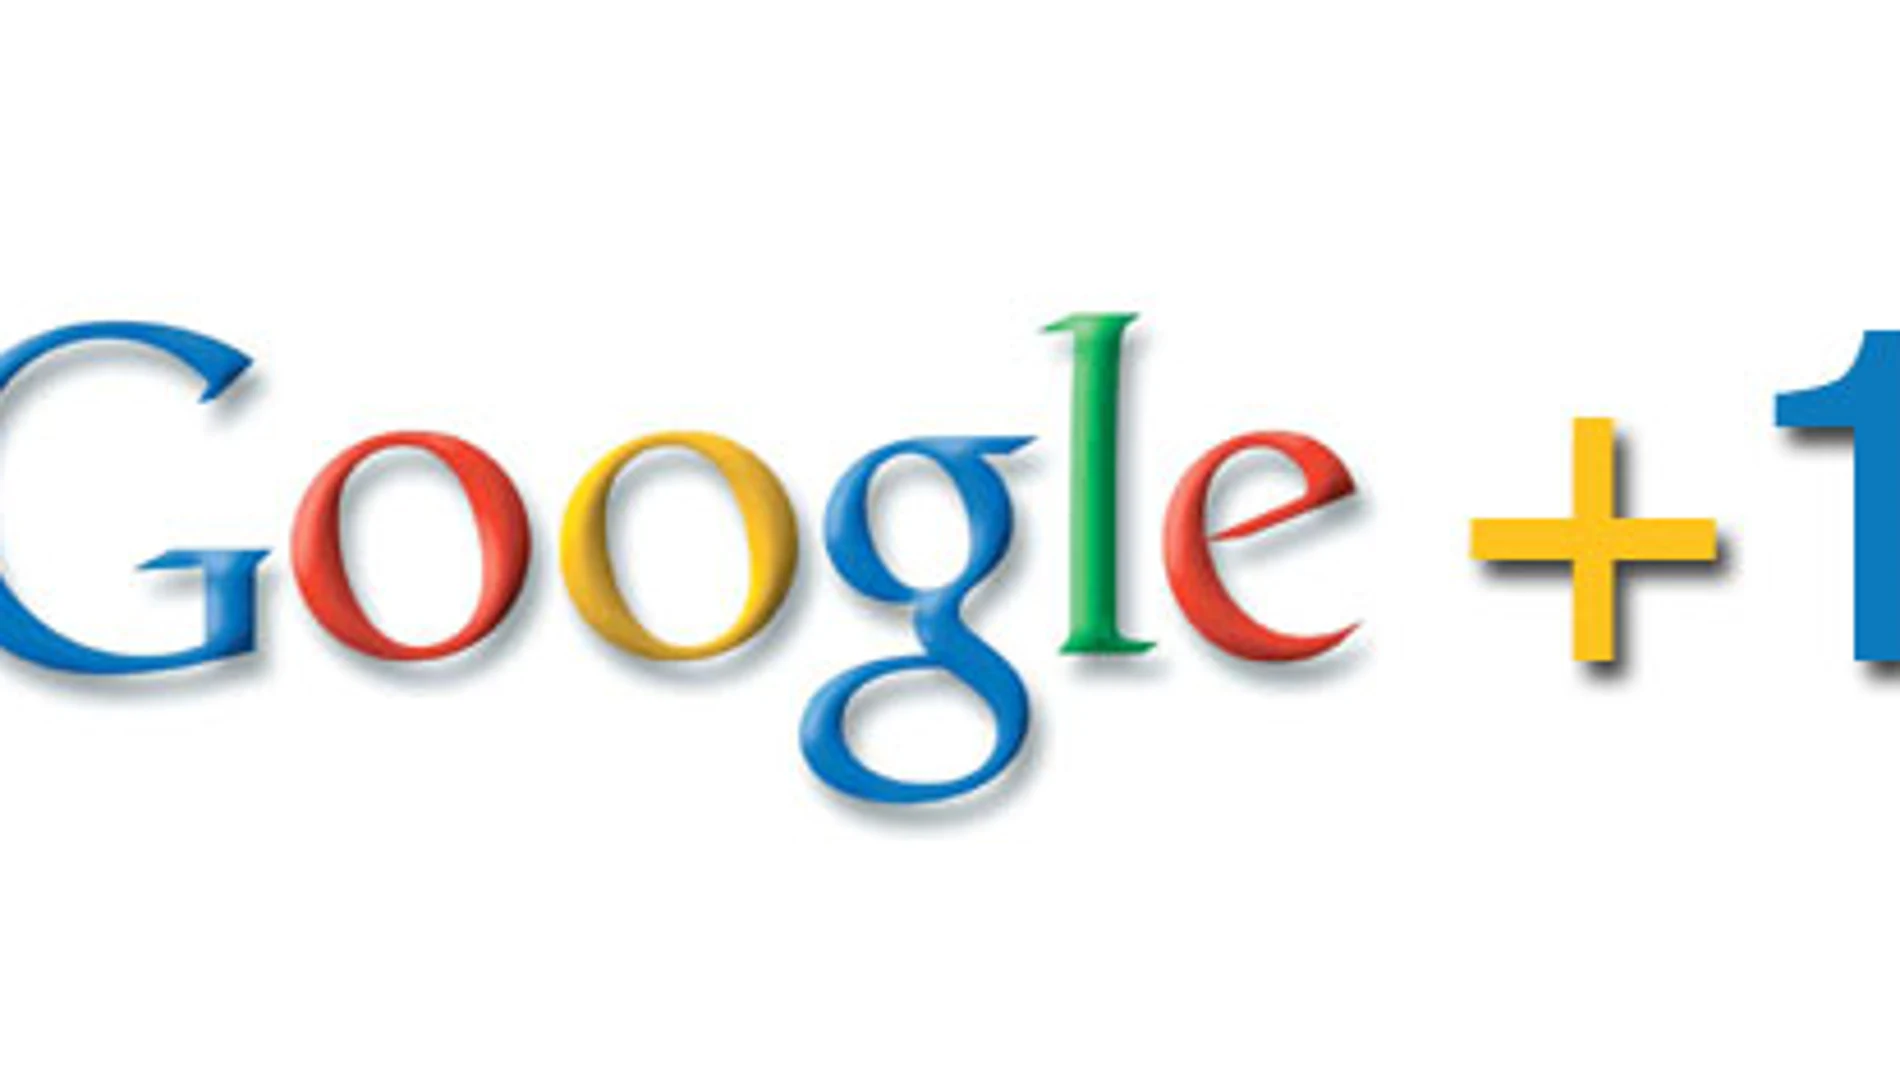 Google prepara su red social